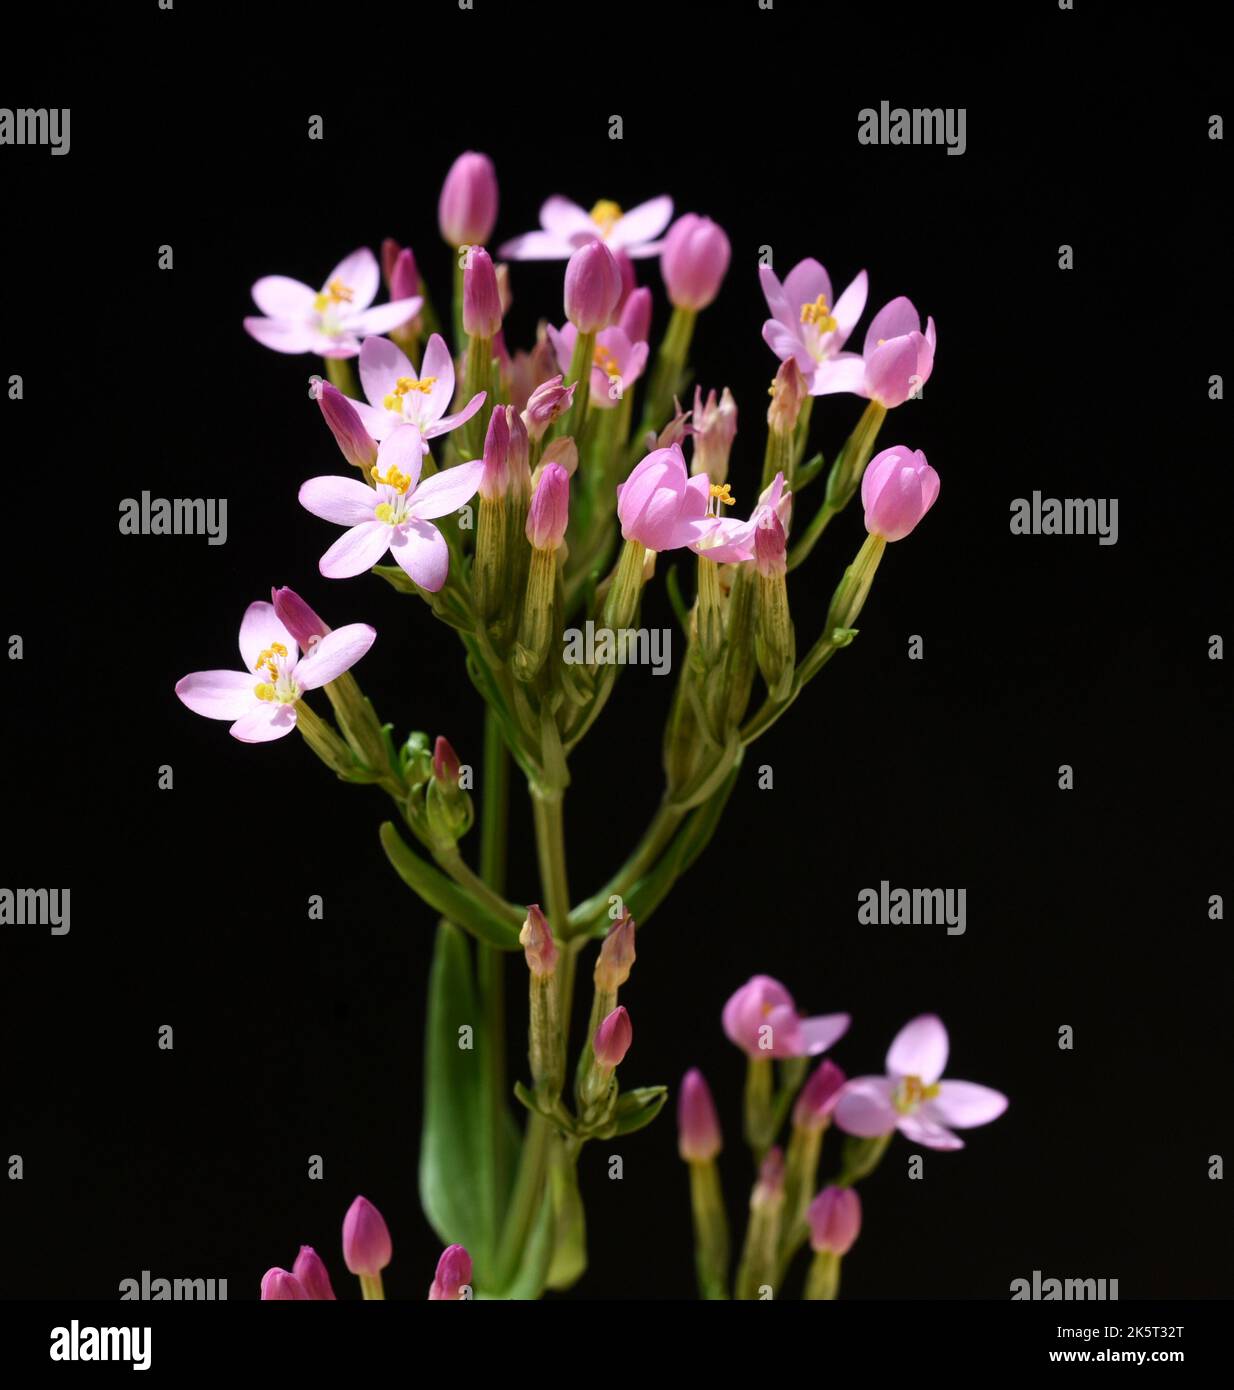 Tausendgueldenkraut, Centaurium erythraea ist eine wichtige Heilpflanze mit lila Blueten und wird in der Medizin verwendet. El Centaurium erythraea es un Foto de stock